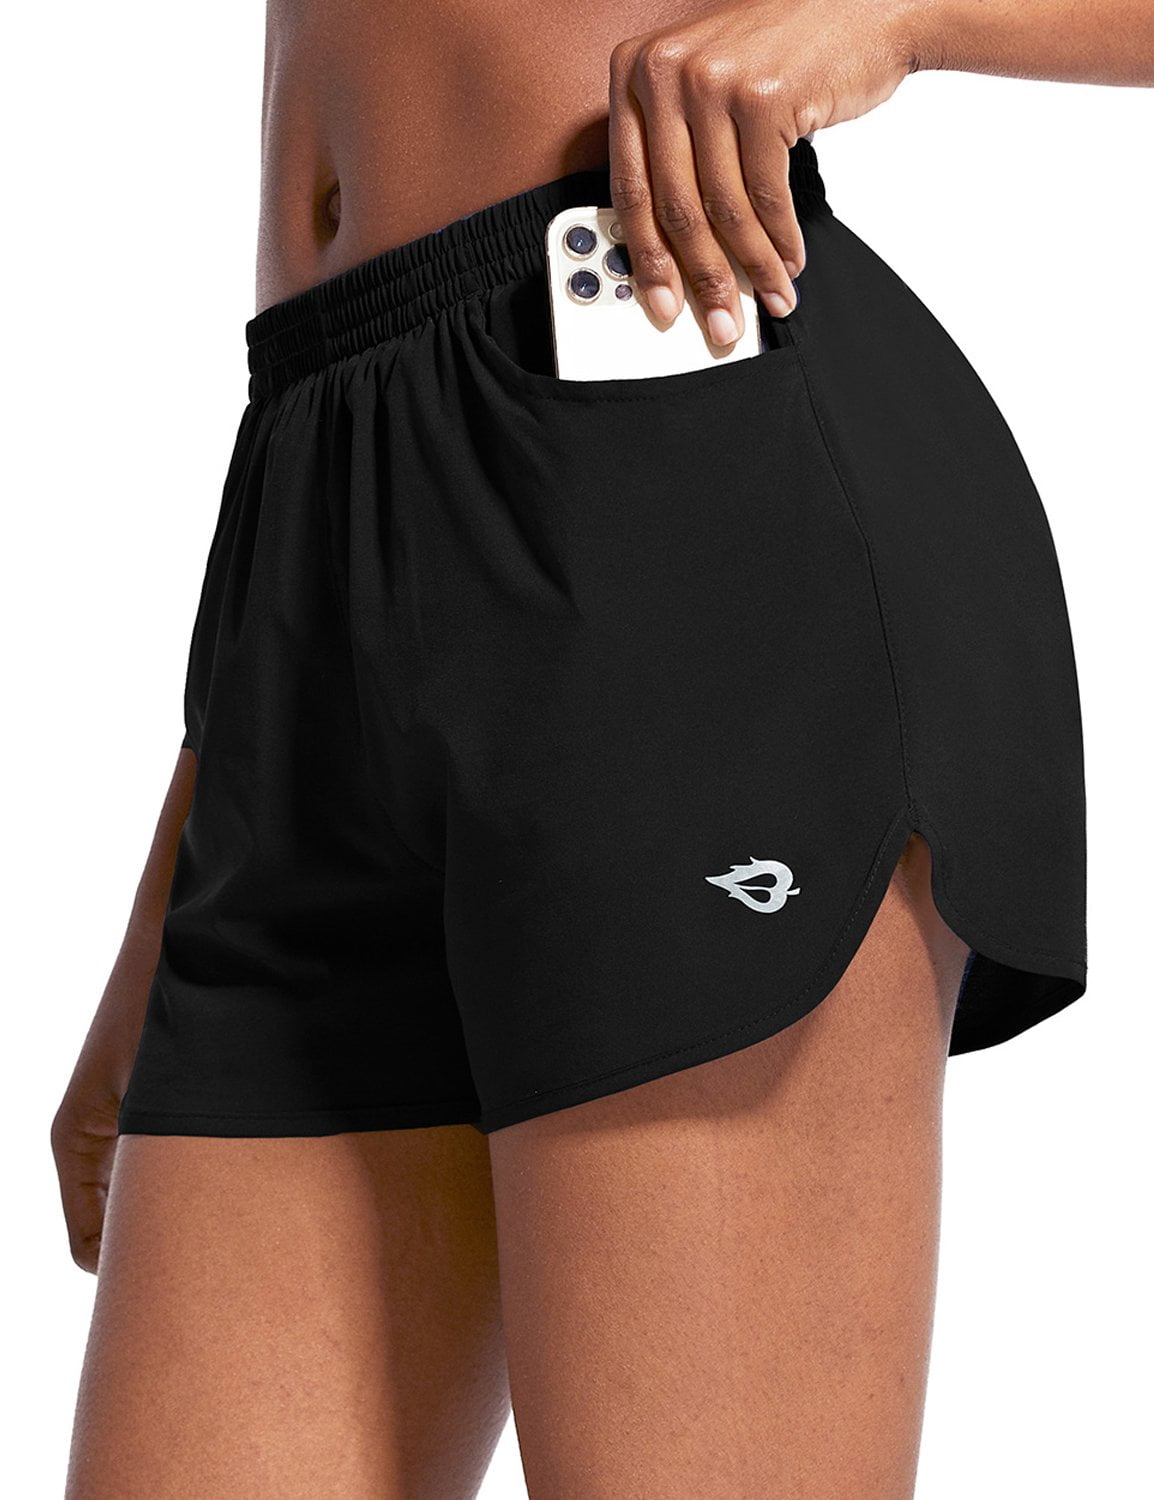 BALEAF Jupe Short Femme Sport 2 en 1 Jupes de Tennis Femme Jupe Maillot de Bain avec Culotte Intérieur pour Yoga Gym Running Dance Plage 